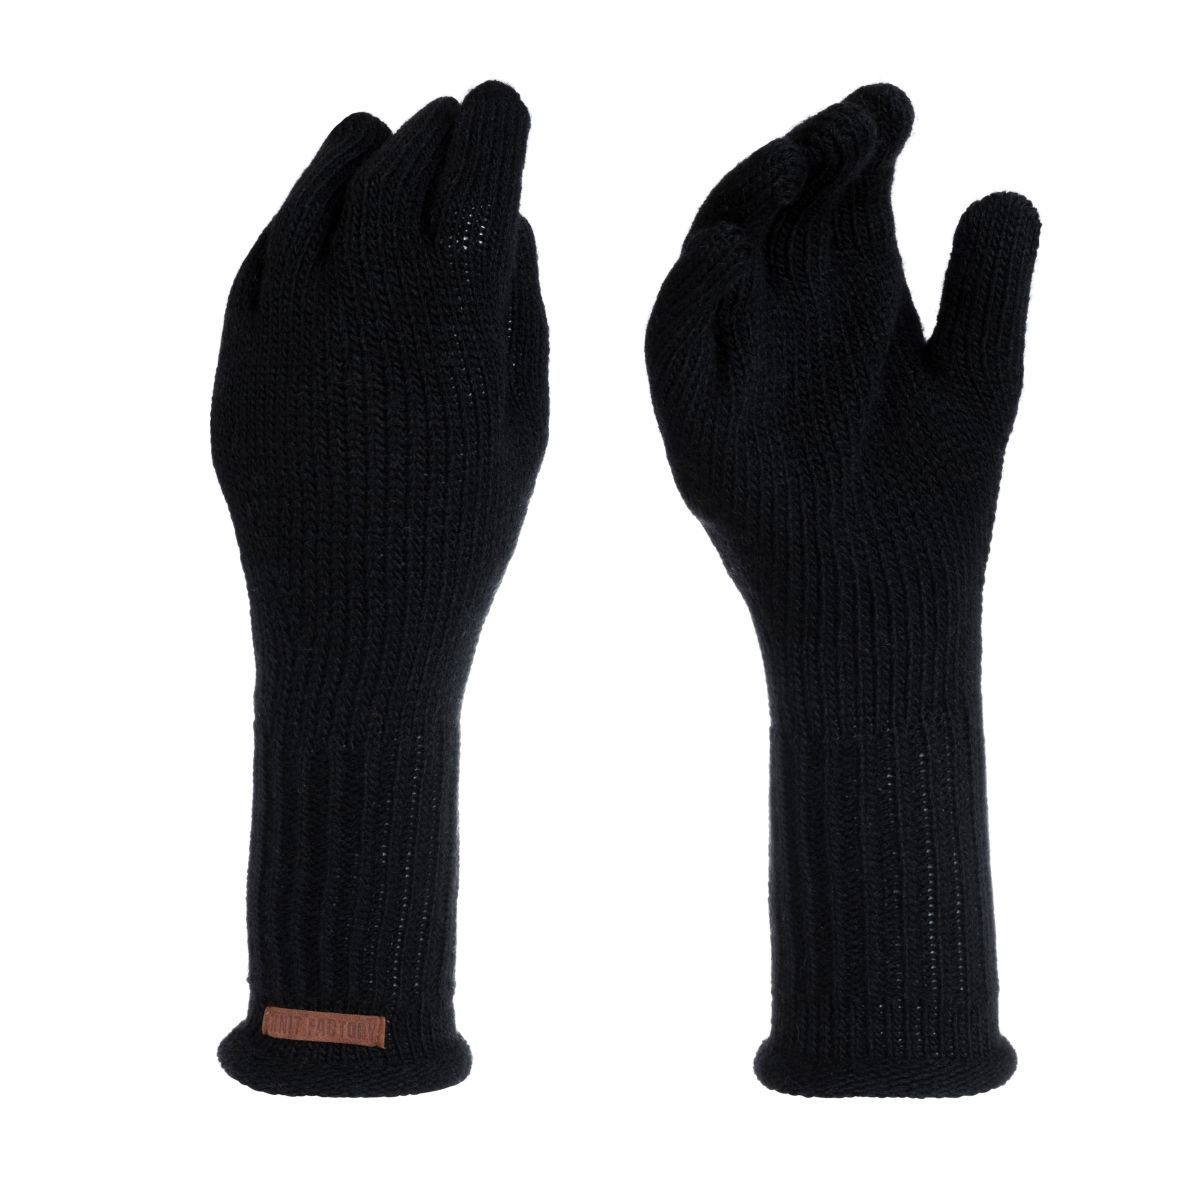 Knit Factory Strickhandschuhe Lana Handschuhe One Size Glatt Schwarz Handschuhe Handstulpen Handschuhe ihne Finger